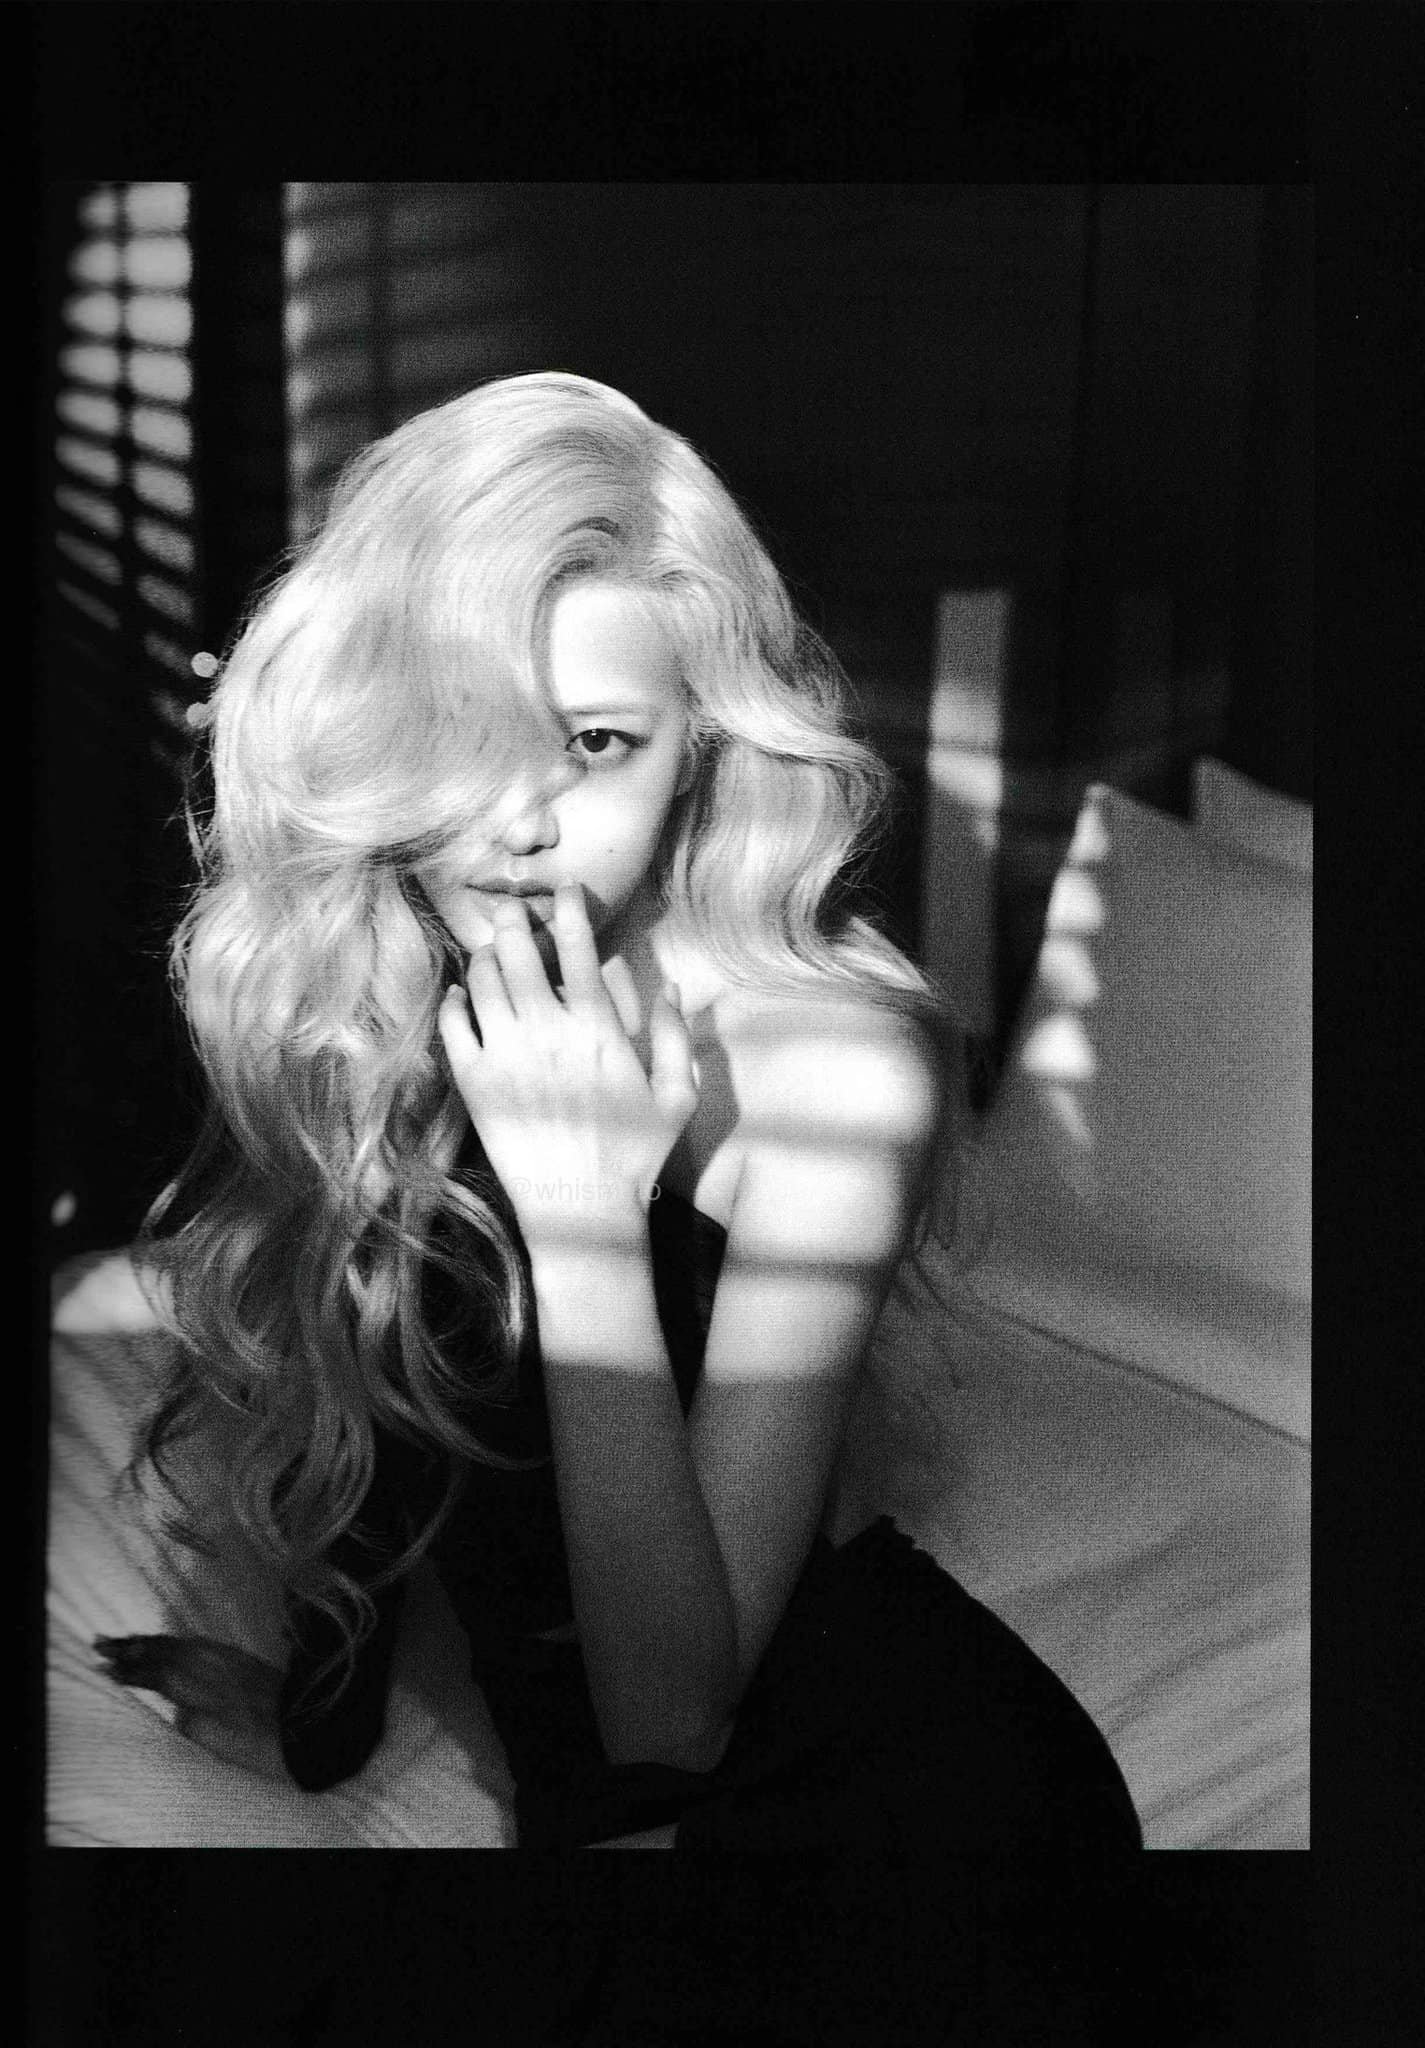 Rosé BlackPink như người mẫu huyền thoại Marilyn Monroe - đó là cảm nhận của nhiều fan hâm mộ nhạc K-Pop. Bức ảnh của cô nàng với trang phục giống hệt của Monroe đã gây được tiếng vang lớn trên khắp thế giới. Hãy xem bức ảnh này để cảm nhận sự hoàn hảo và quyến rũ của Rosé BlackPink.